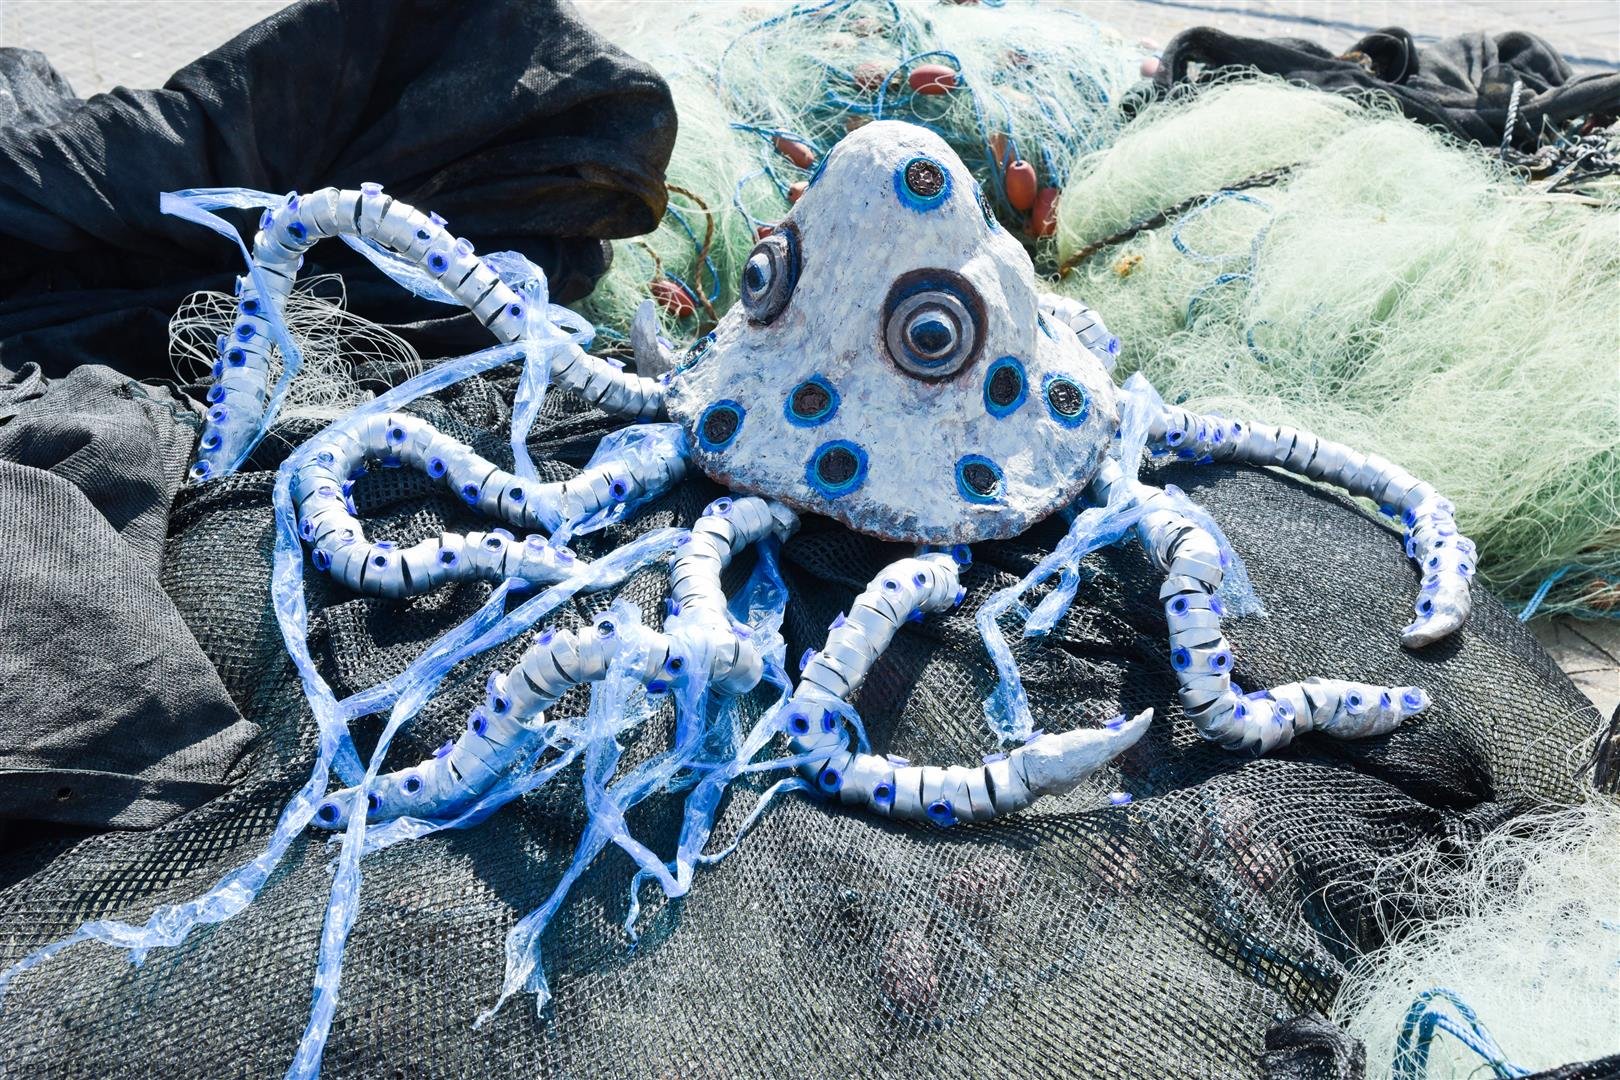 תמנון הטבעות הכחולות נלכד ברשת הדייגים ונאבק בשקיות הניילון החונקות את גופו